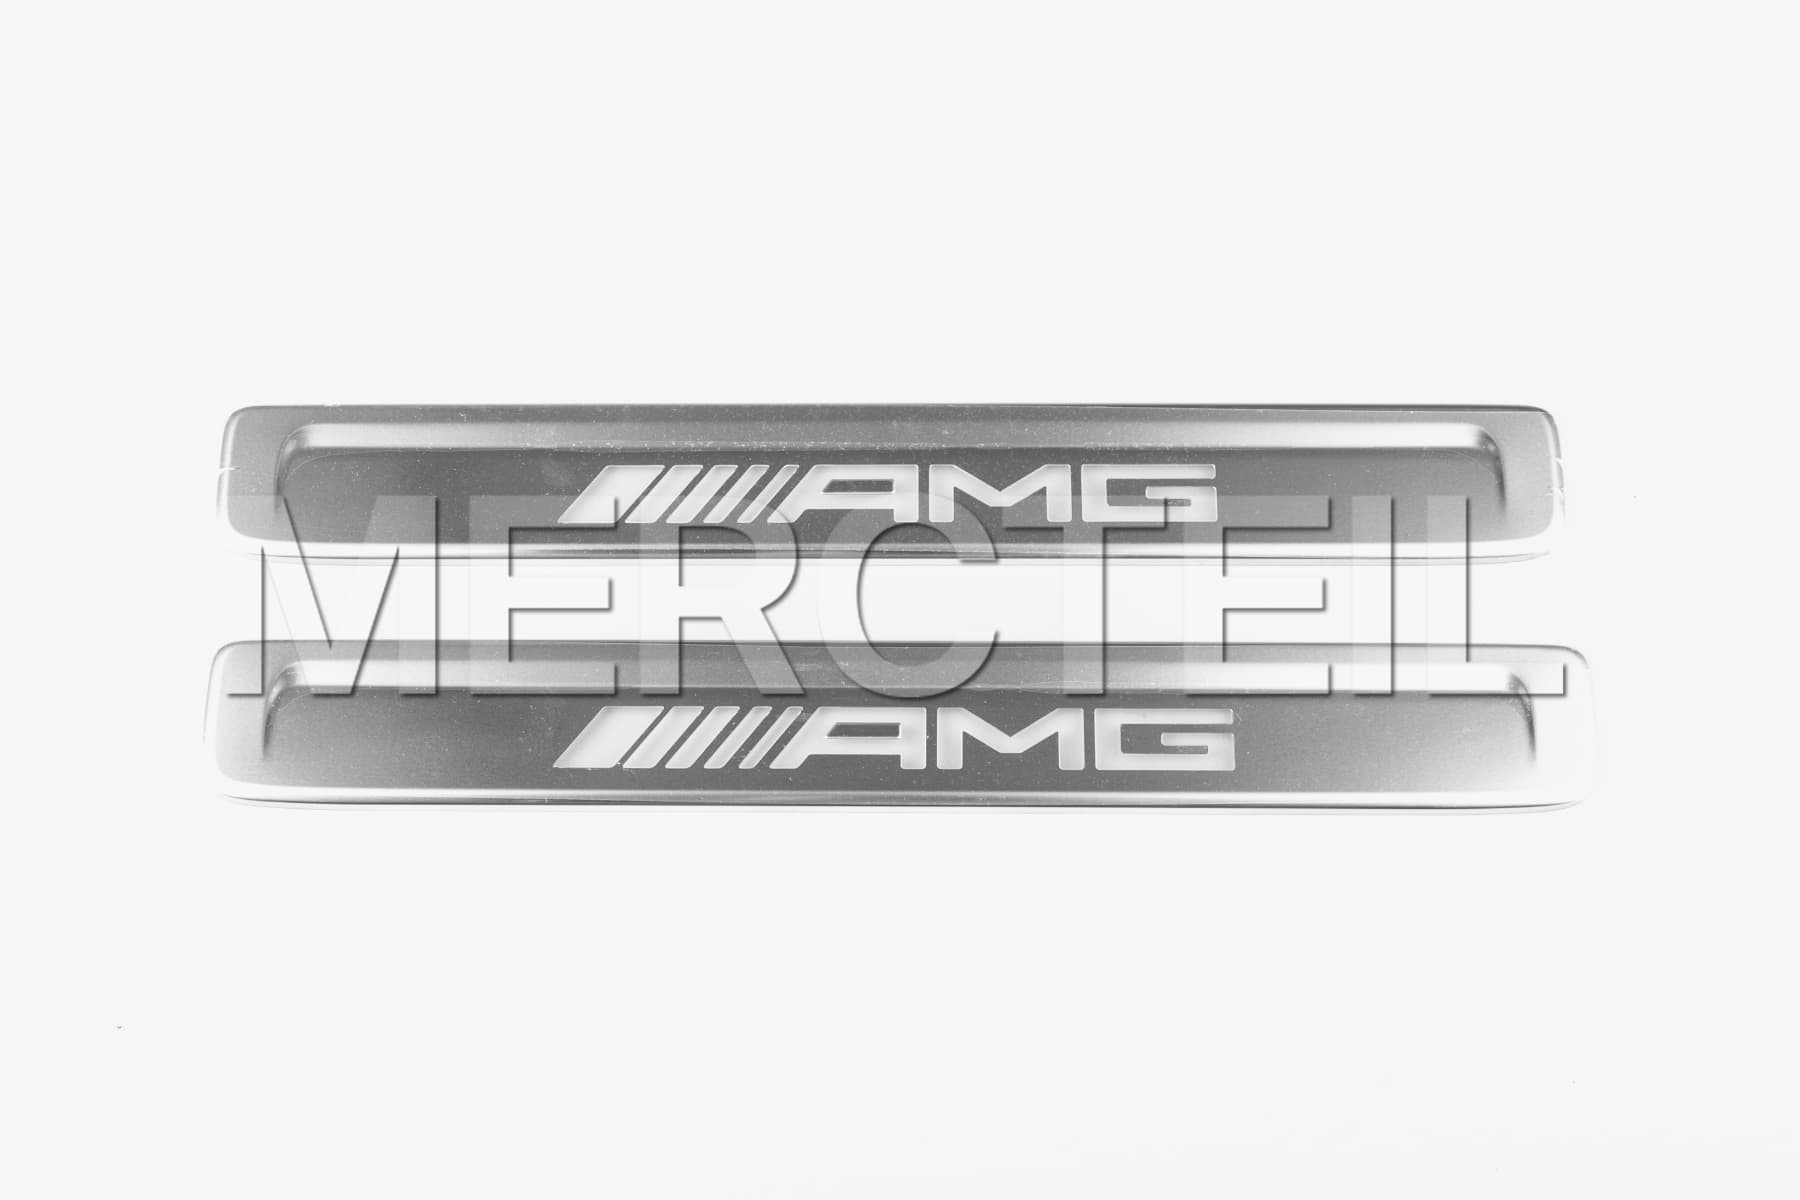 C-Klasse / GLC-Klasse AMG Wechselcover für Beleuchtete Einstiegsleiste Code U45 206 254 Original Mercedes-AMG (Teilenummer: A2066805305)